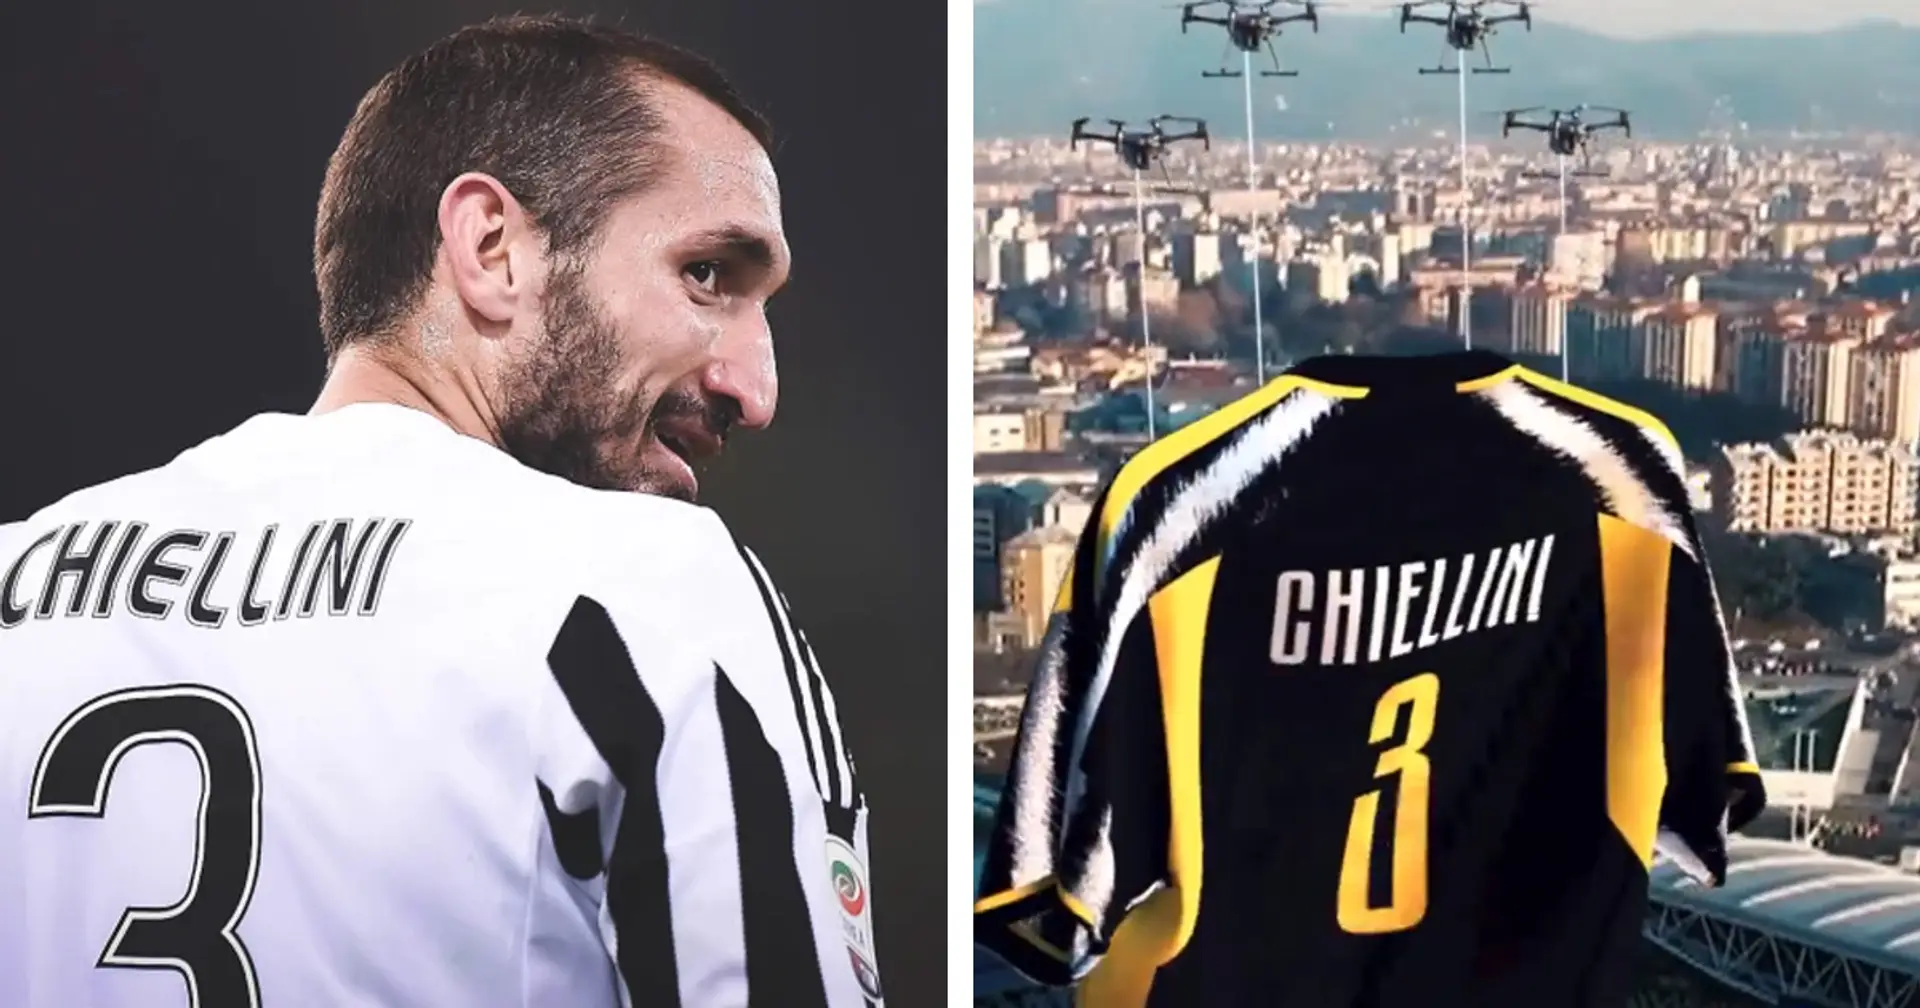 "Grazie di tutto, Capitano": la Juventus celebra Chiellini sui social nel giorno del suo ritiro